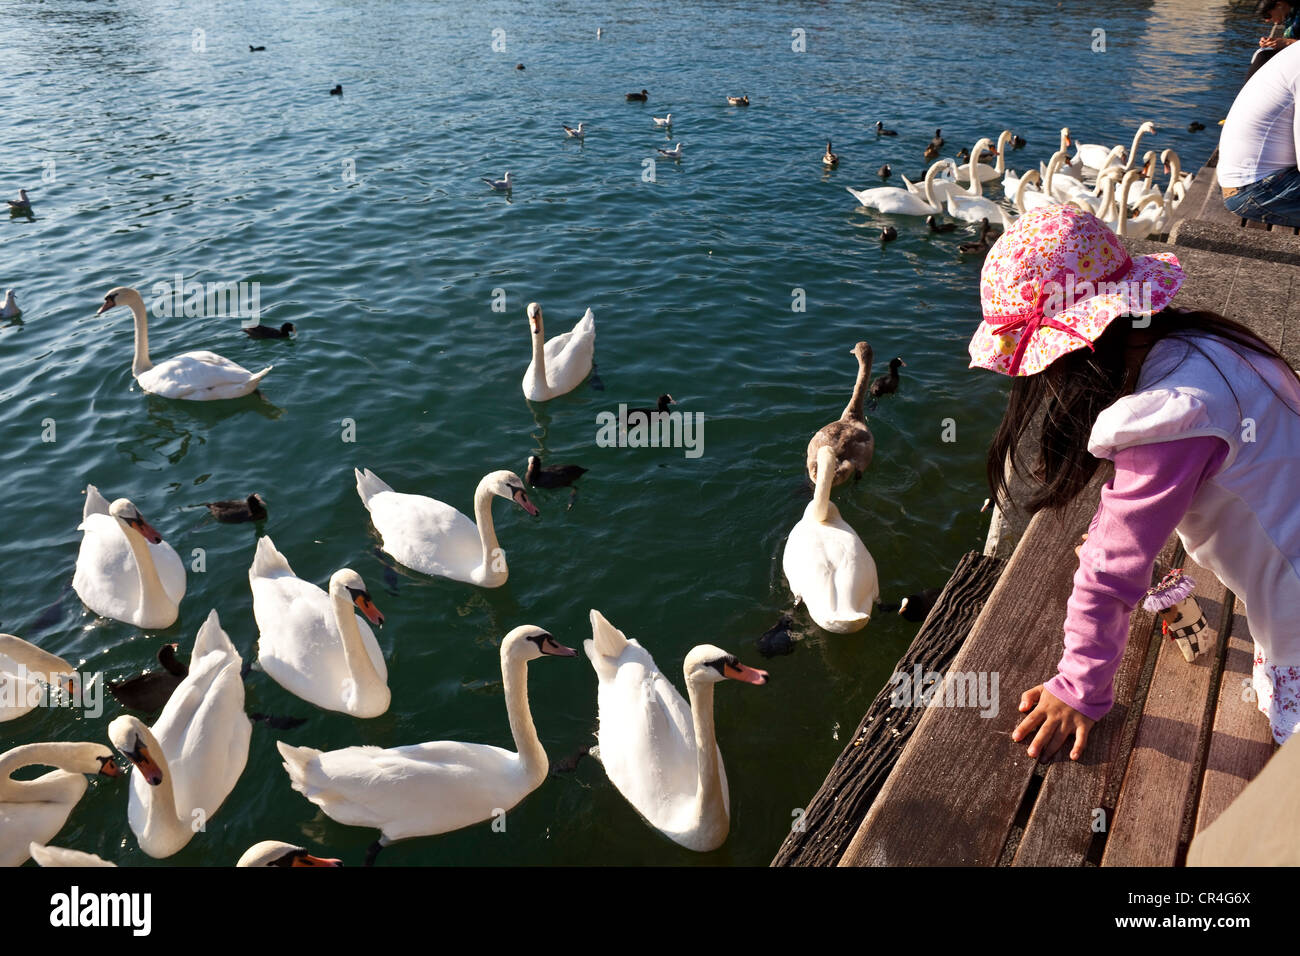 La Suisse, Zurich, le lac de Zurich, jeune fille nourrir les cygnes Banque D'Images